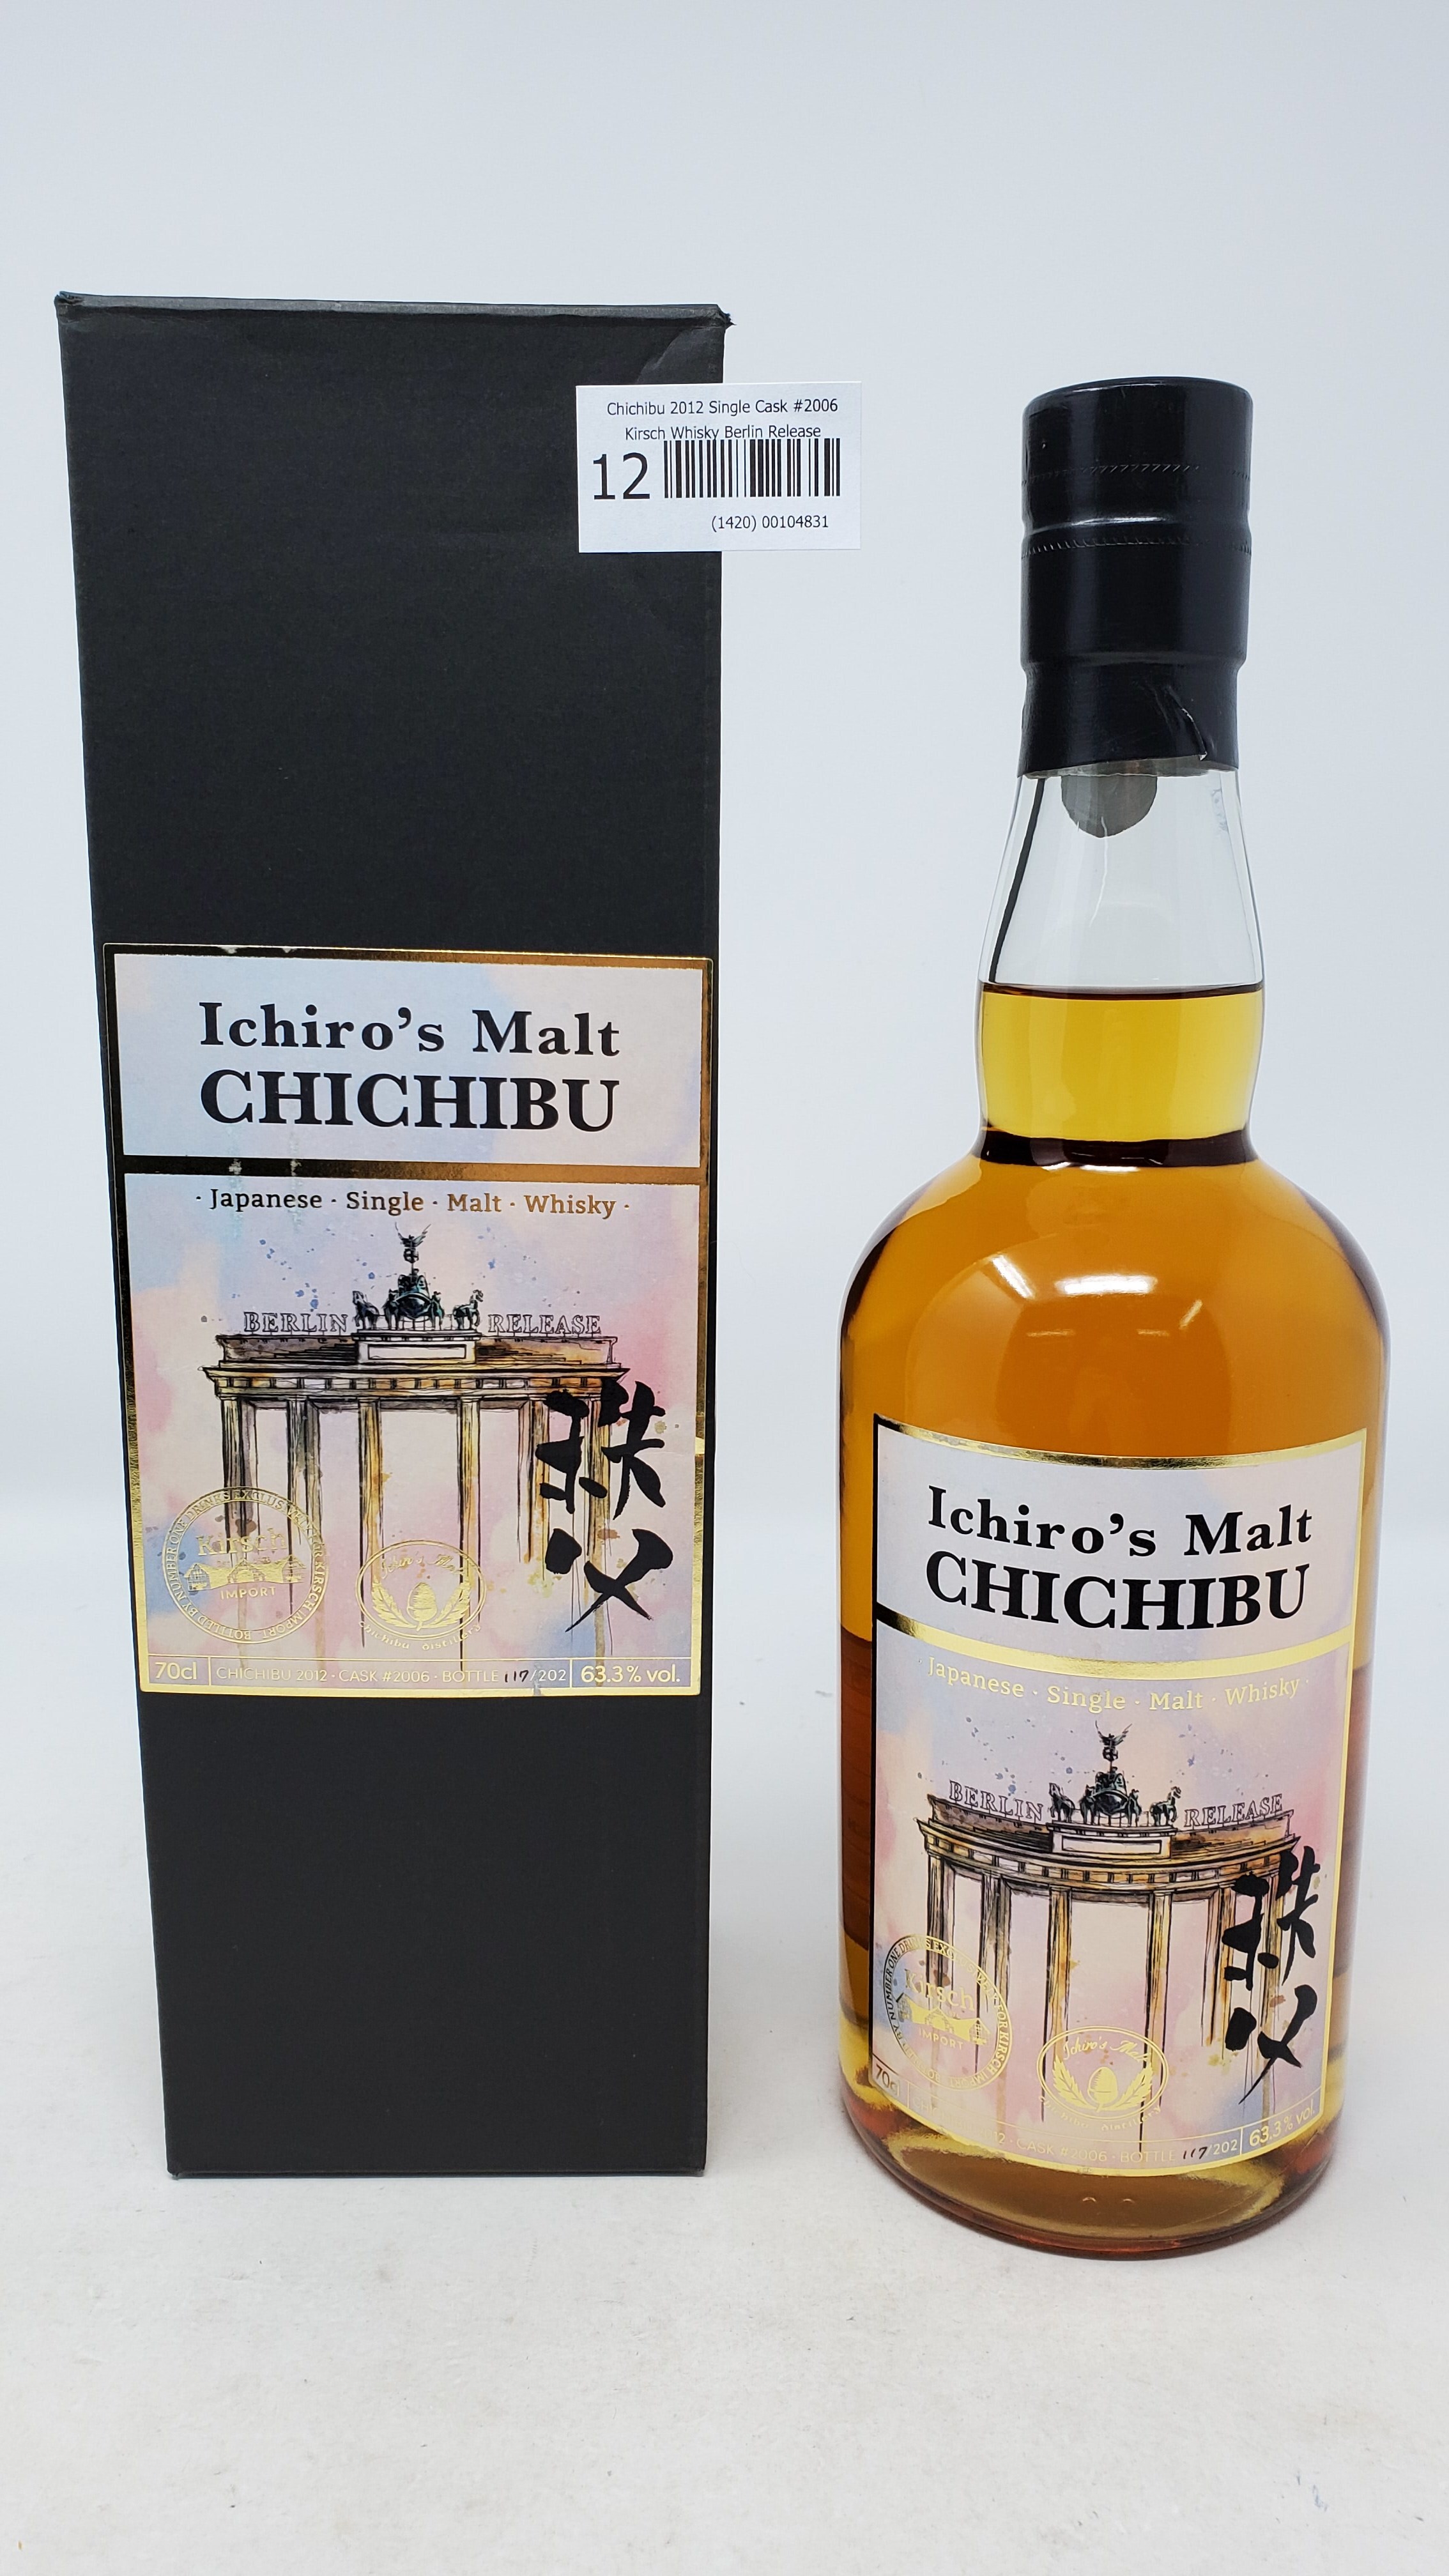 Chichibu 2012 Single Cask #2006 Kirsch Whisky Berlin Release